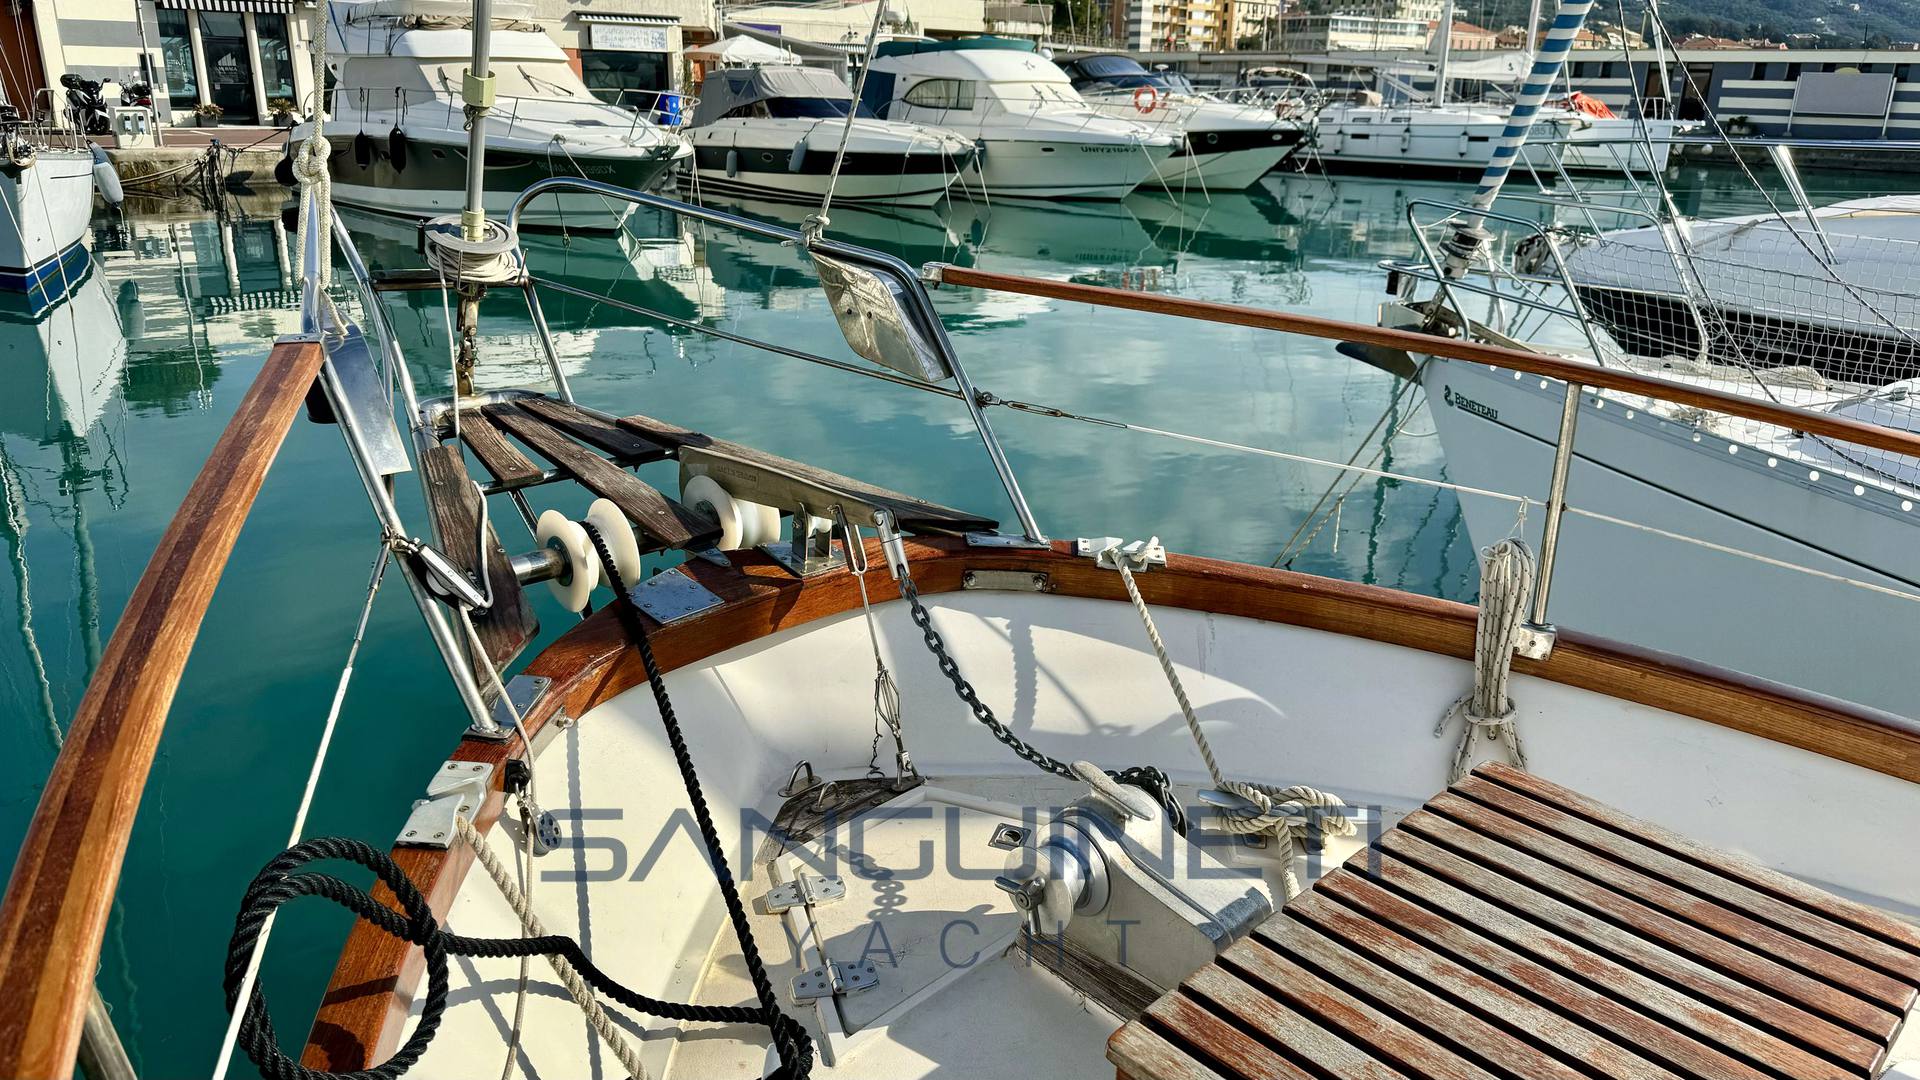 Syltala Nauticat 33 Barco de motor usado para venta